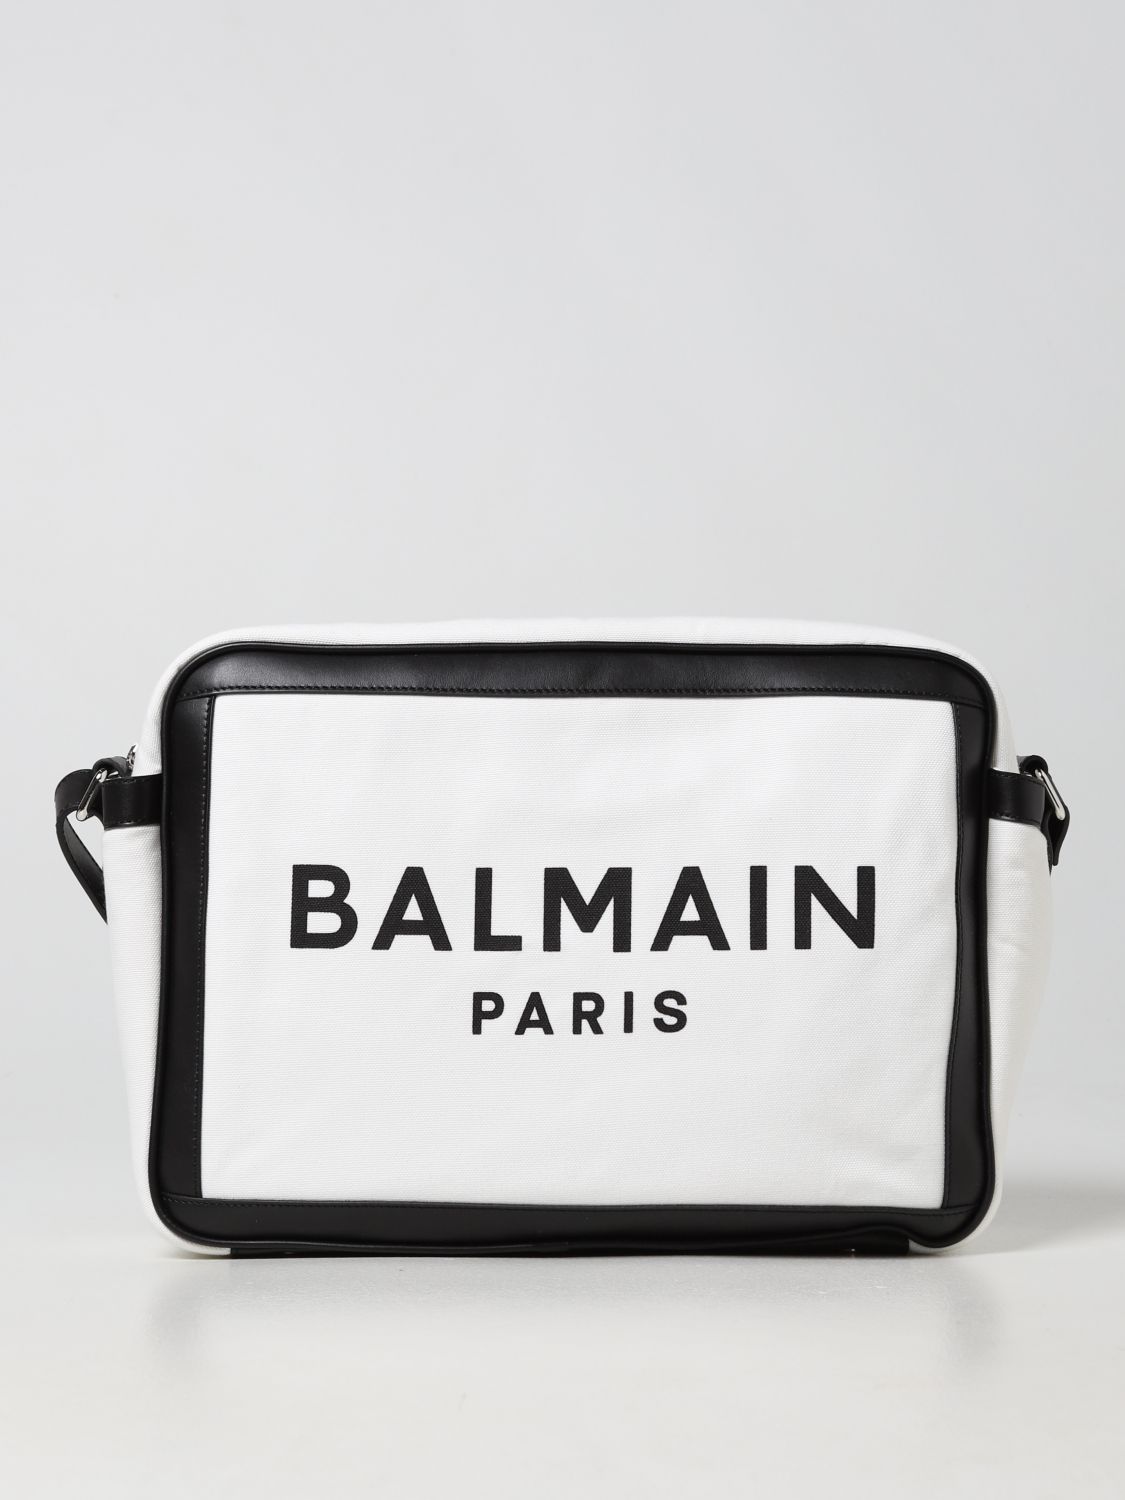 BALMAIN Bags for Men | ModeSens